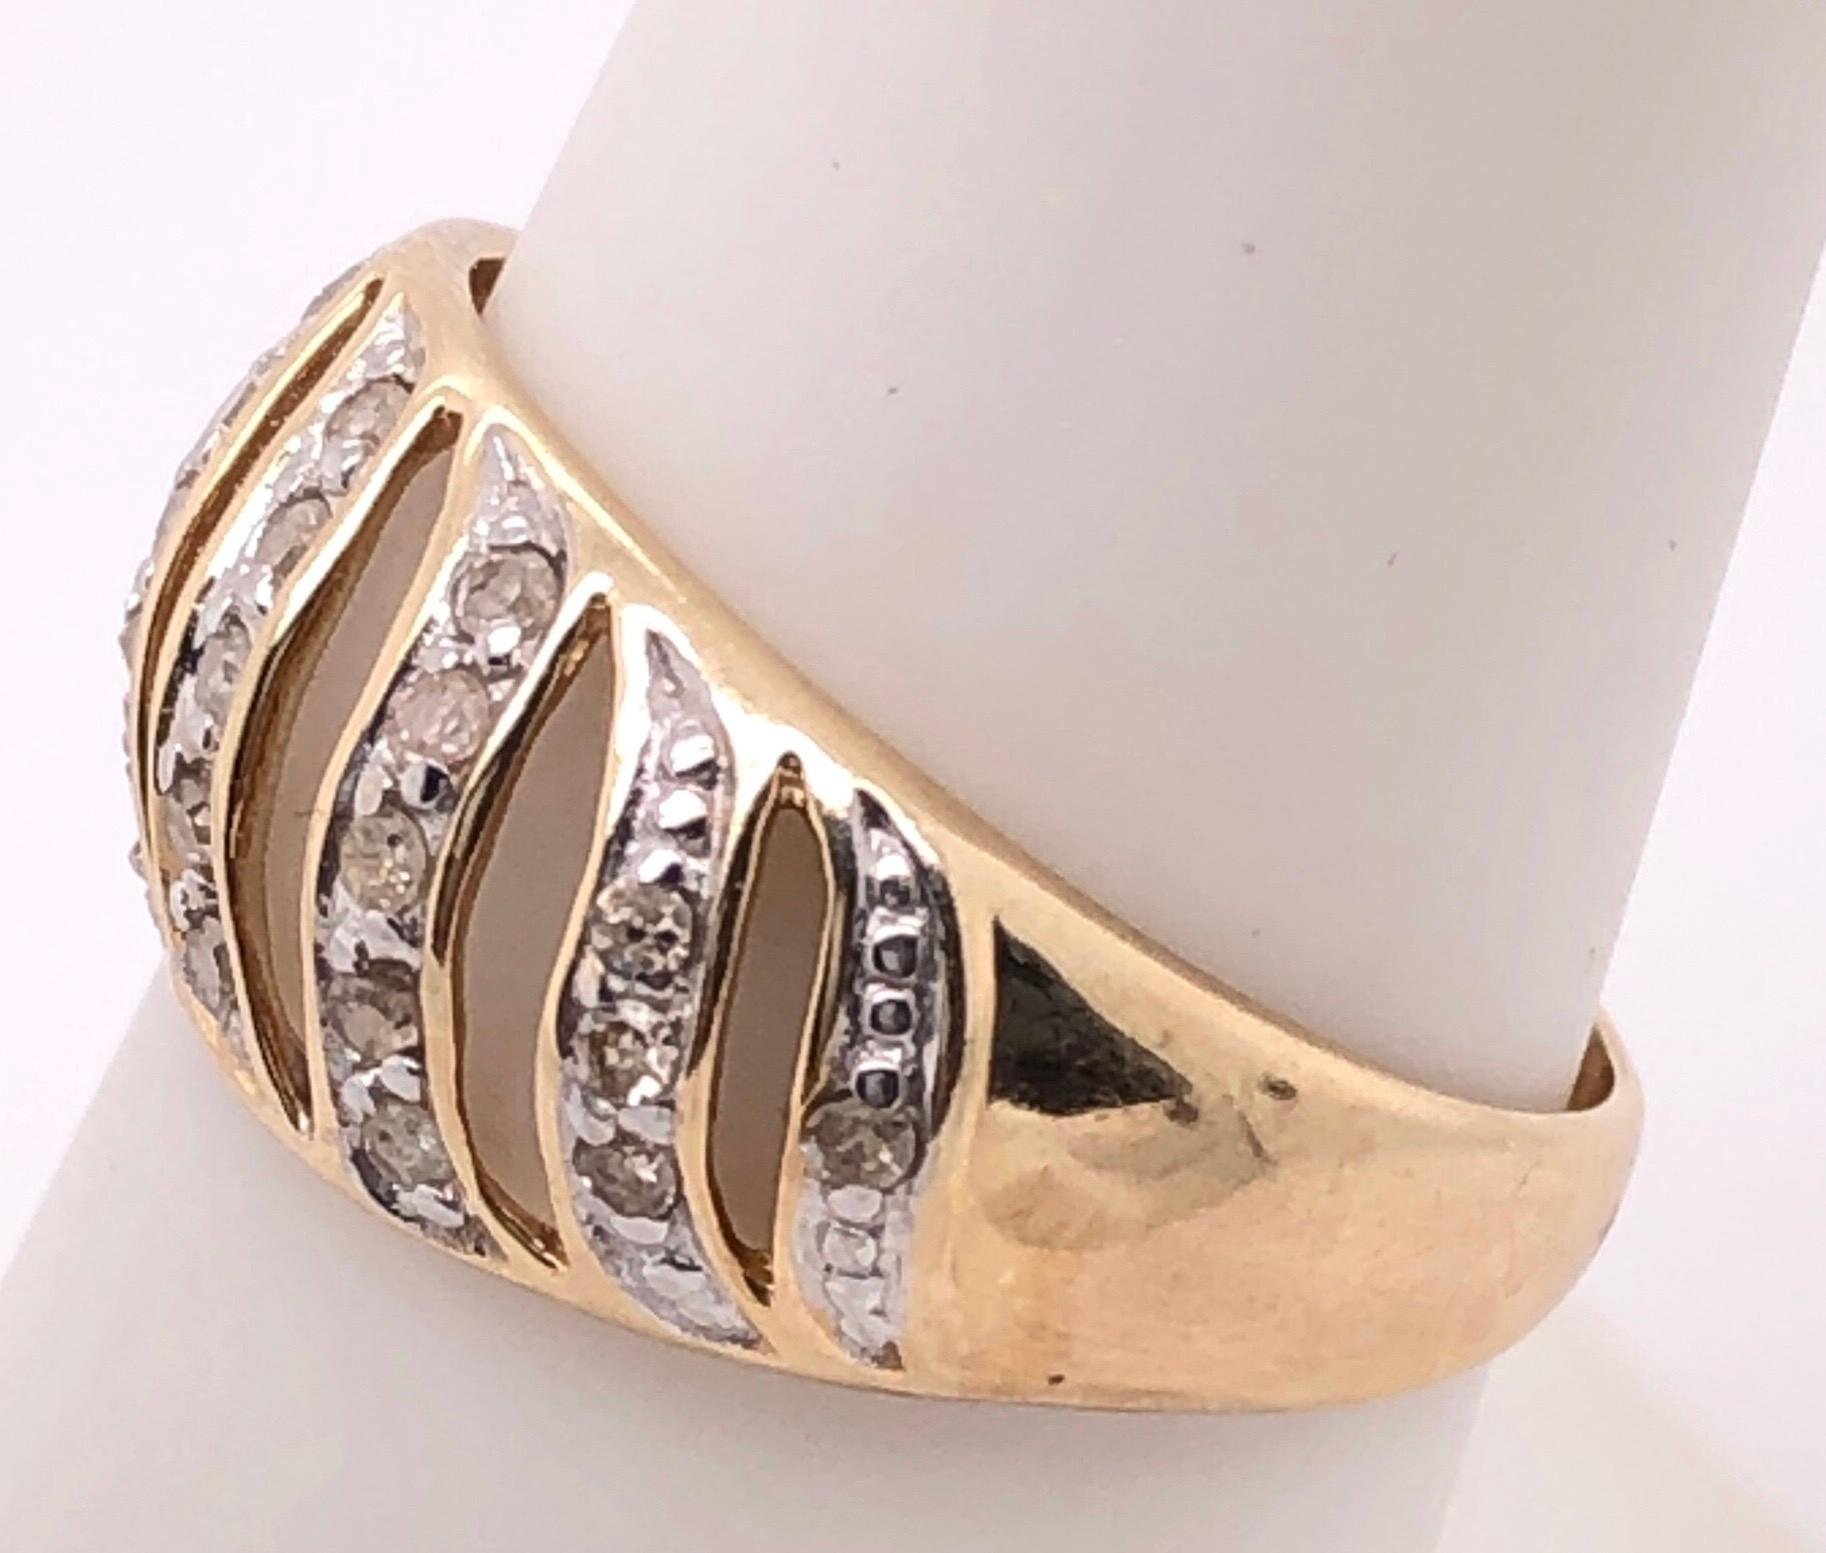 14 Karat Gelbgold Fashion Ring mit Diamanten.
Größe 7
2.50 Gramm Gesamtgewicht.